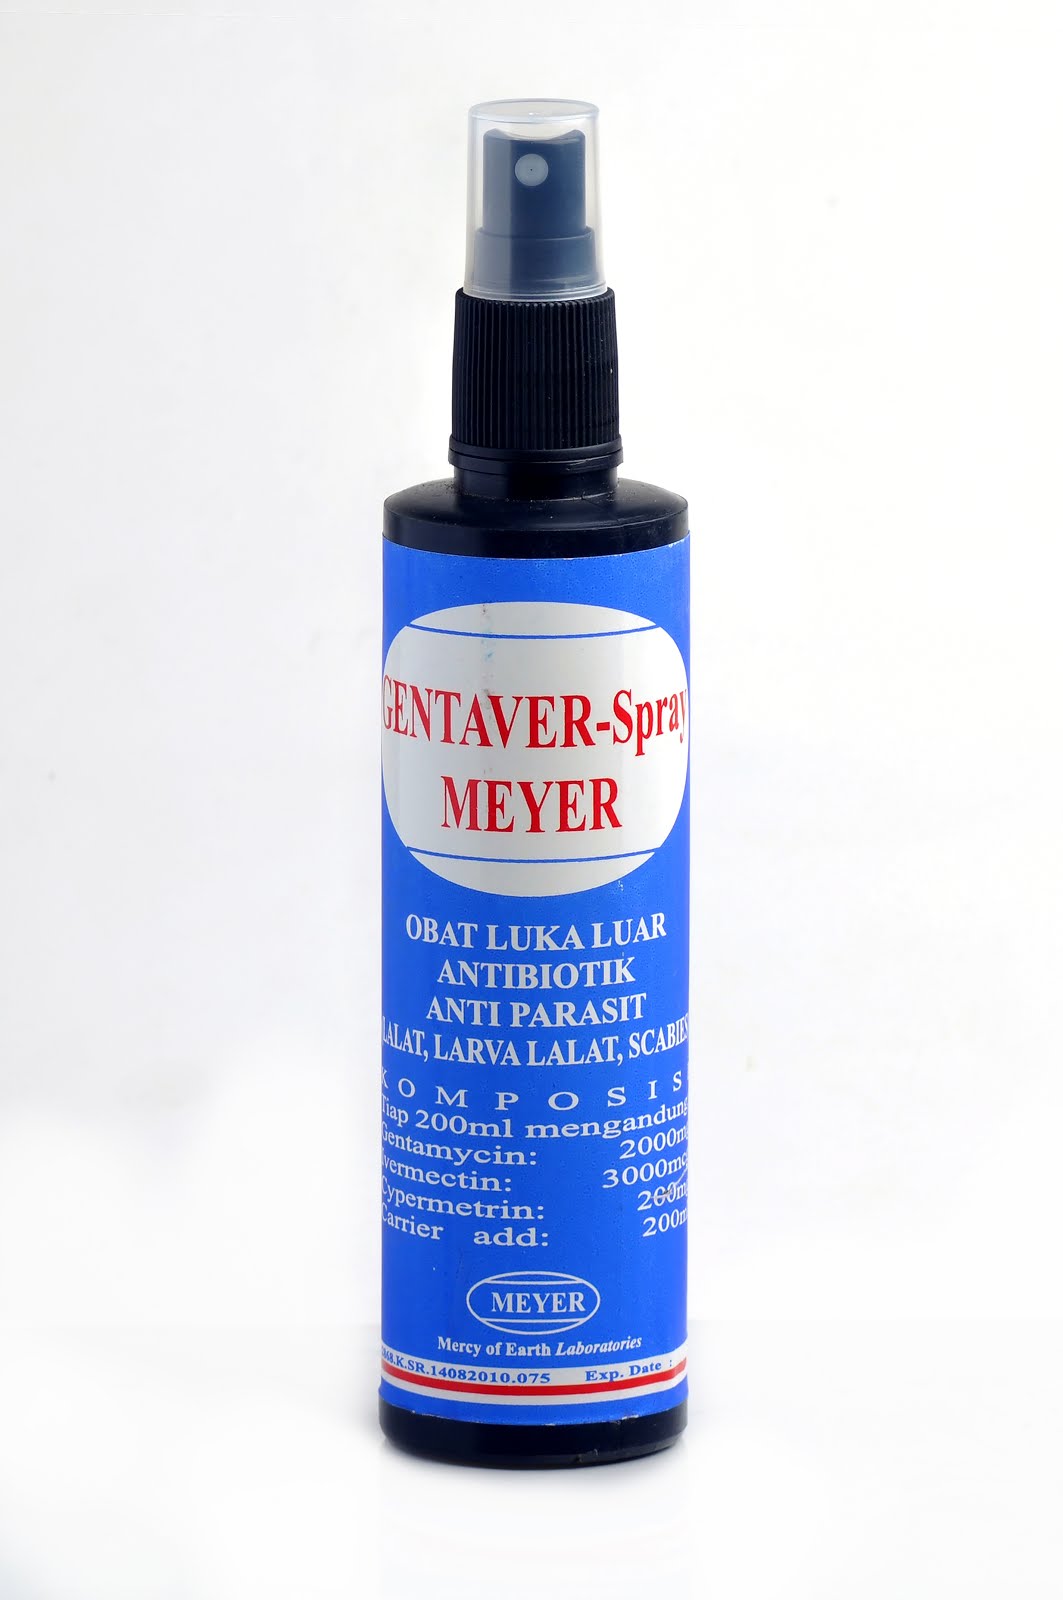 Gentaver Spray Meyer